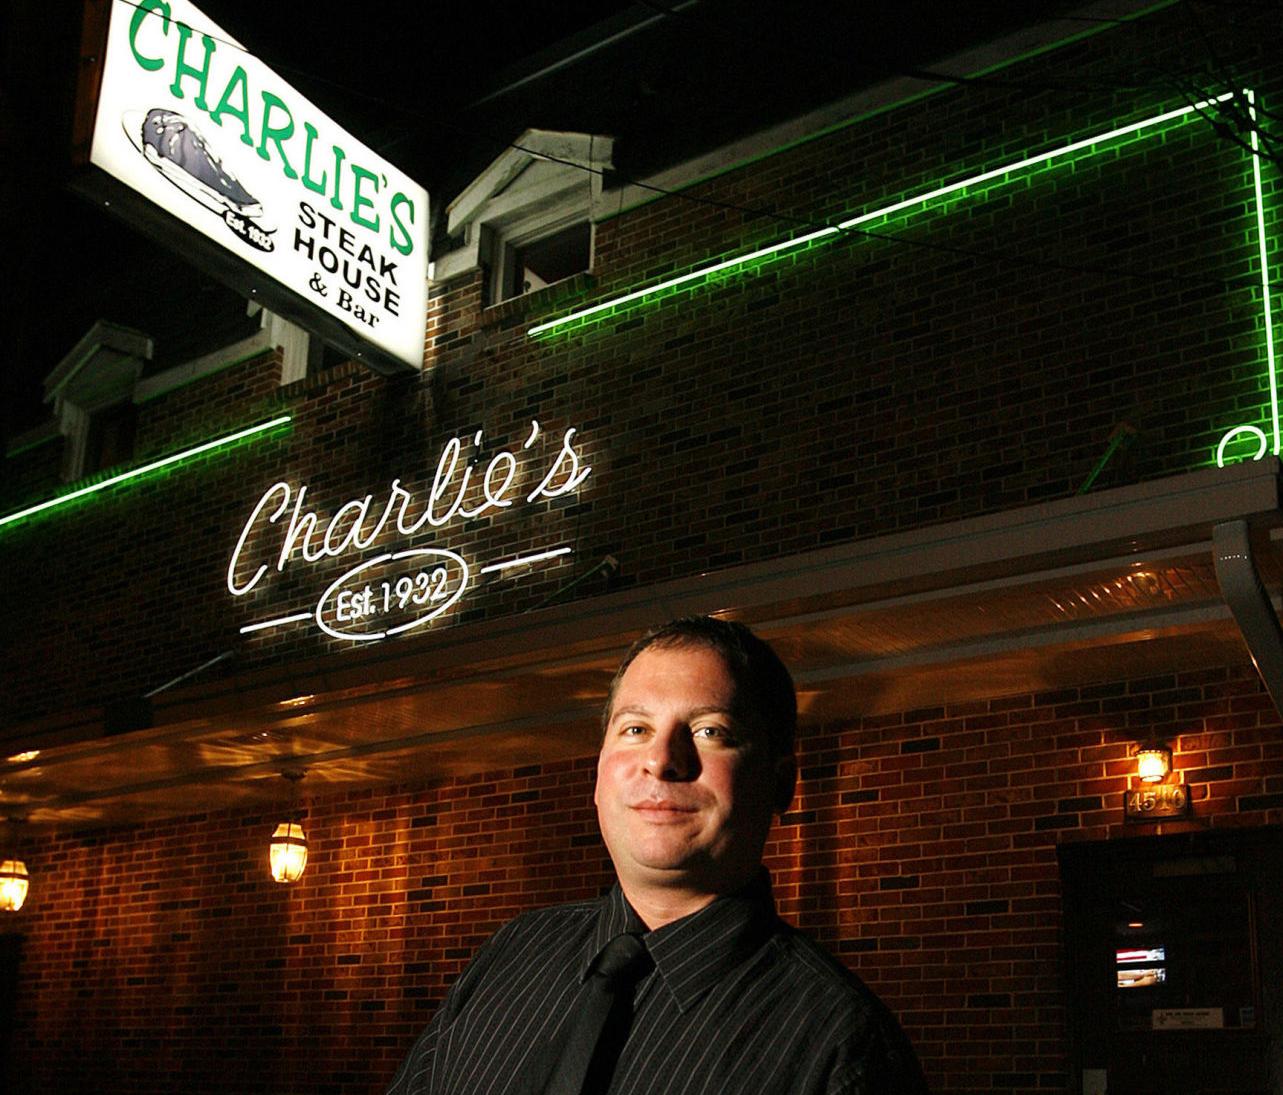 Matthew Dwyer, camarero que revivió el querido restaurante Charlie de Nueva Orleans, muere a los 49